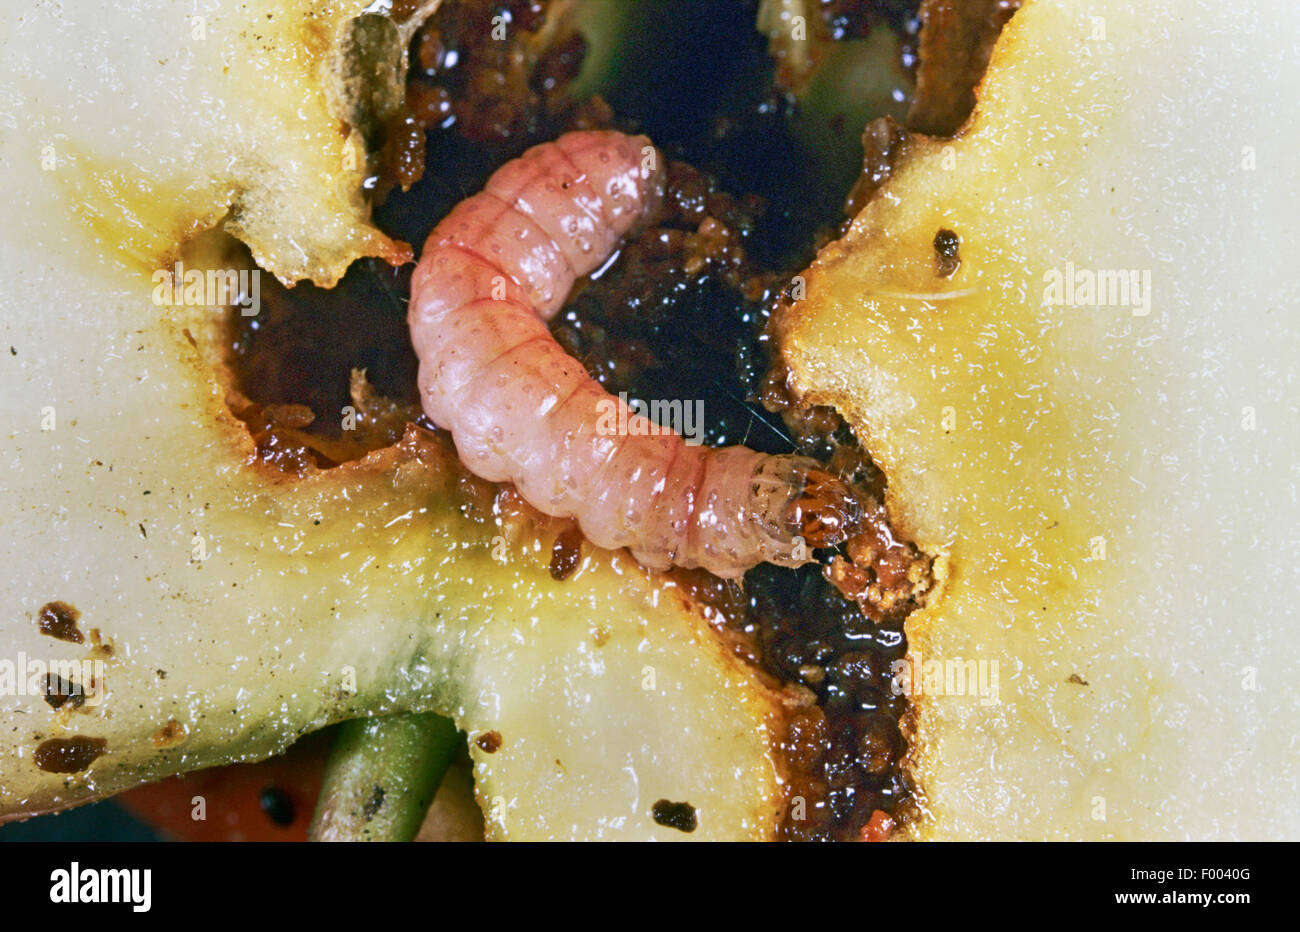 La pomme, carpocapse, Codlin (Laspeyresia pomonella, moth Cydia pomonella, Carpocapsa pomonella), larve dans une pomme, Allemagne Banque D'Images